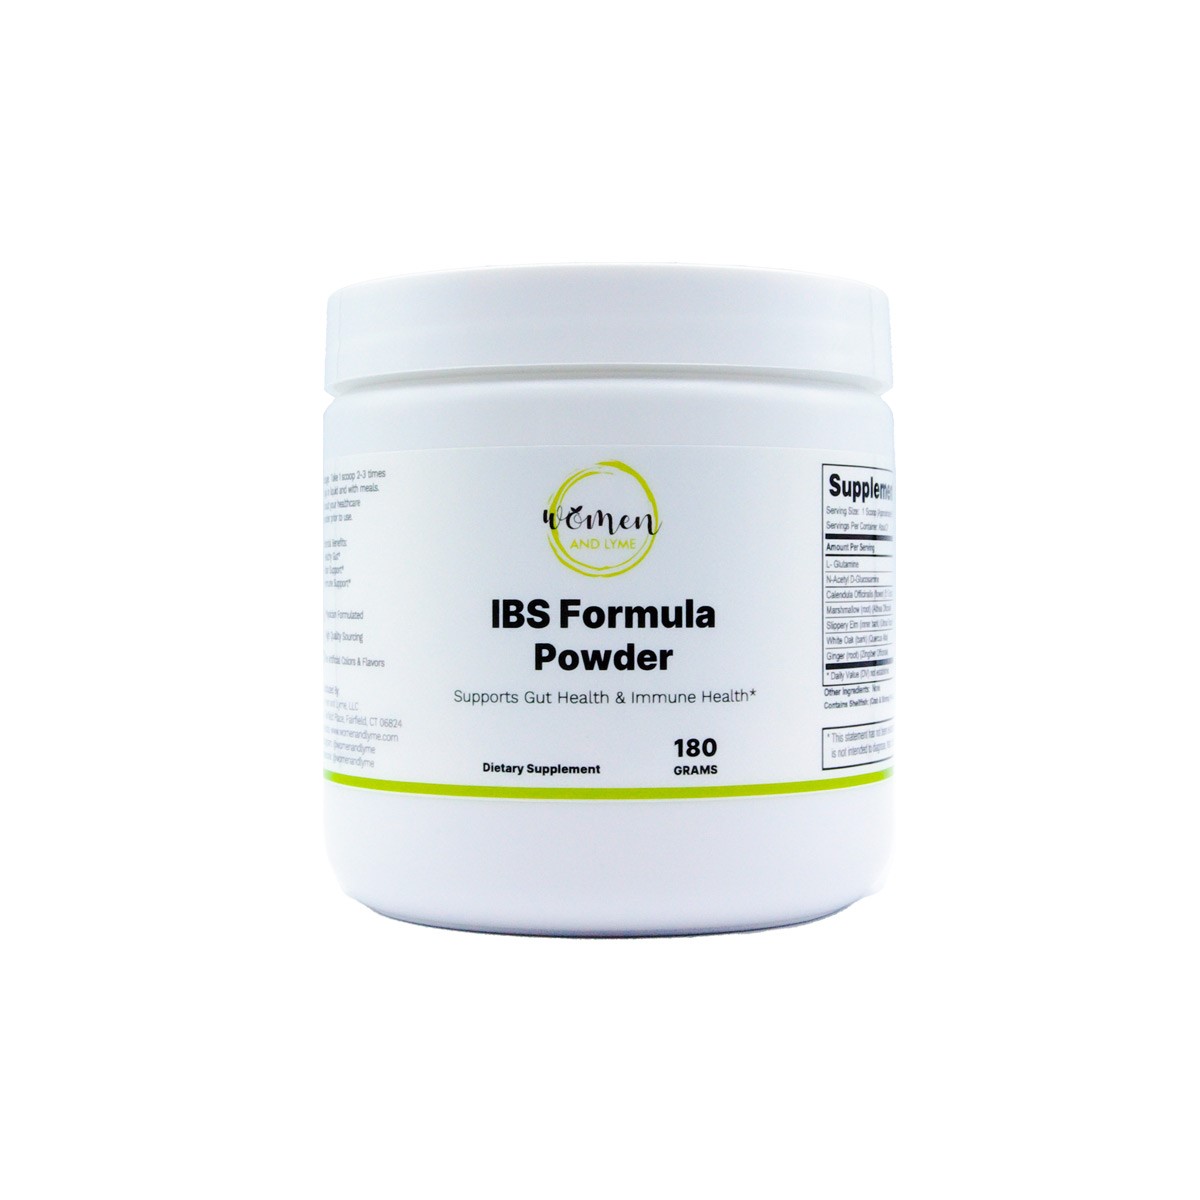 IBS Formula Powder